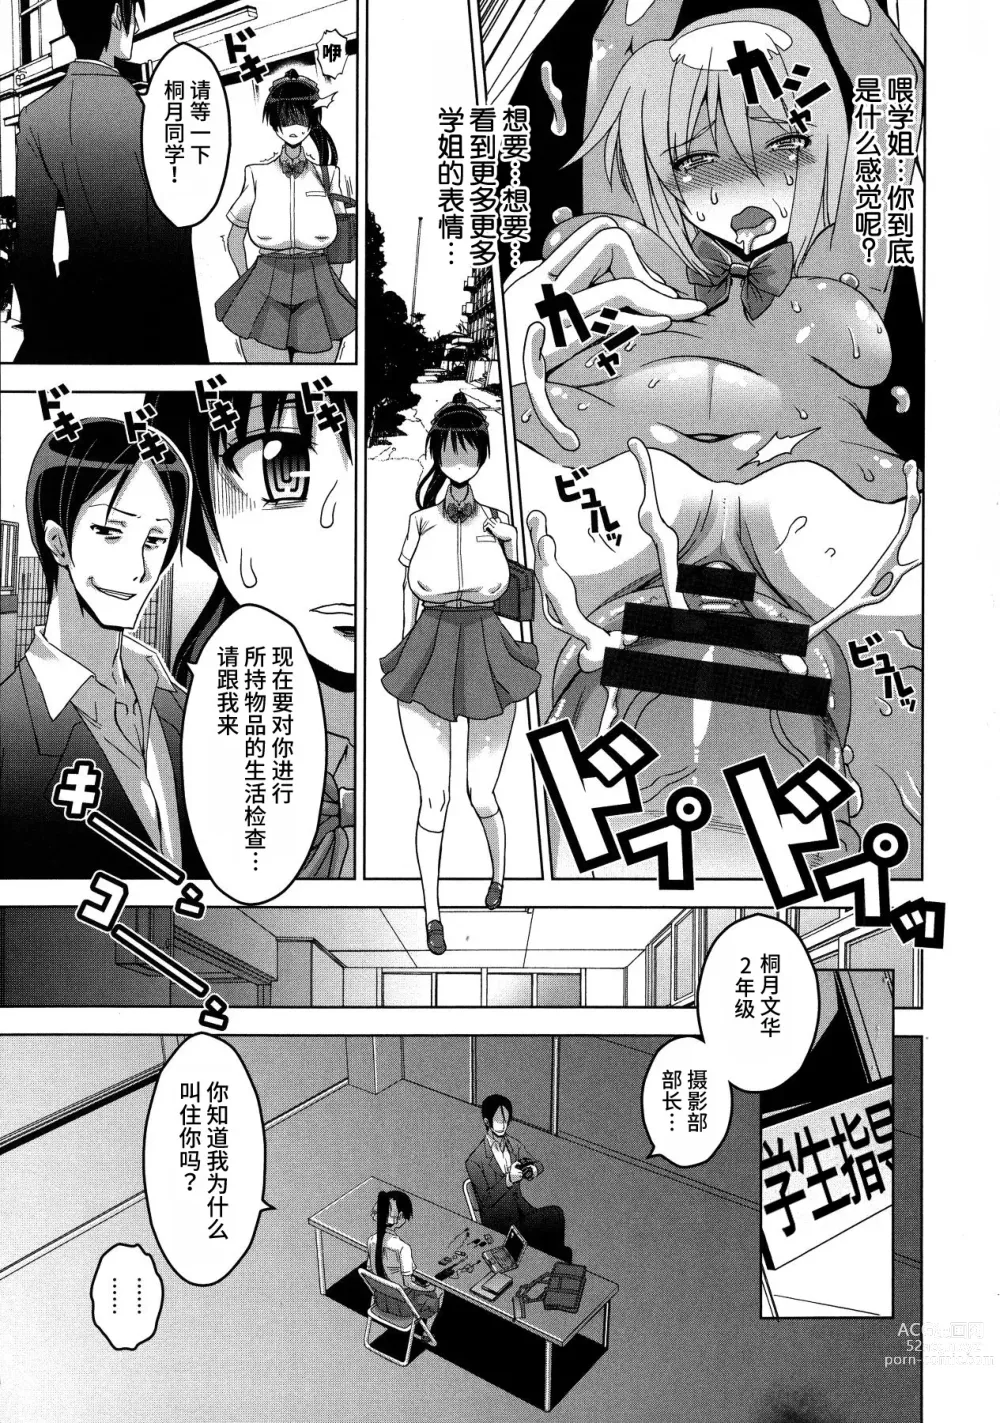 Page 150 of manga Chichiniku no Rakuin Bakunyuu ni kizamareta Etsuraku